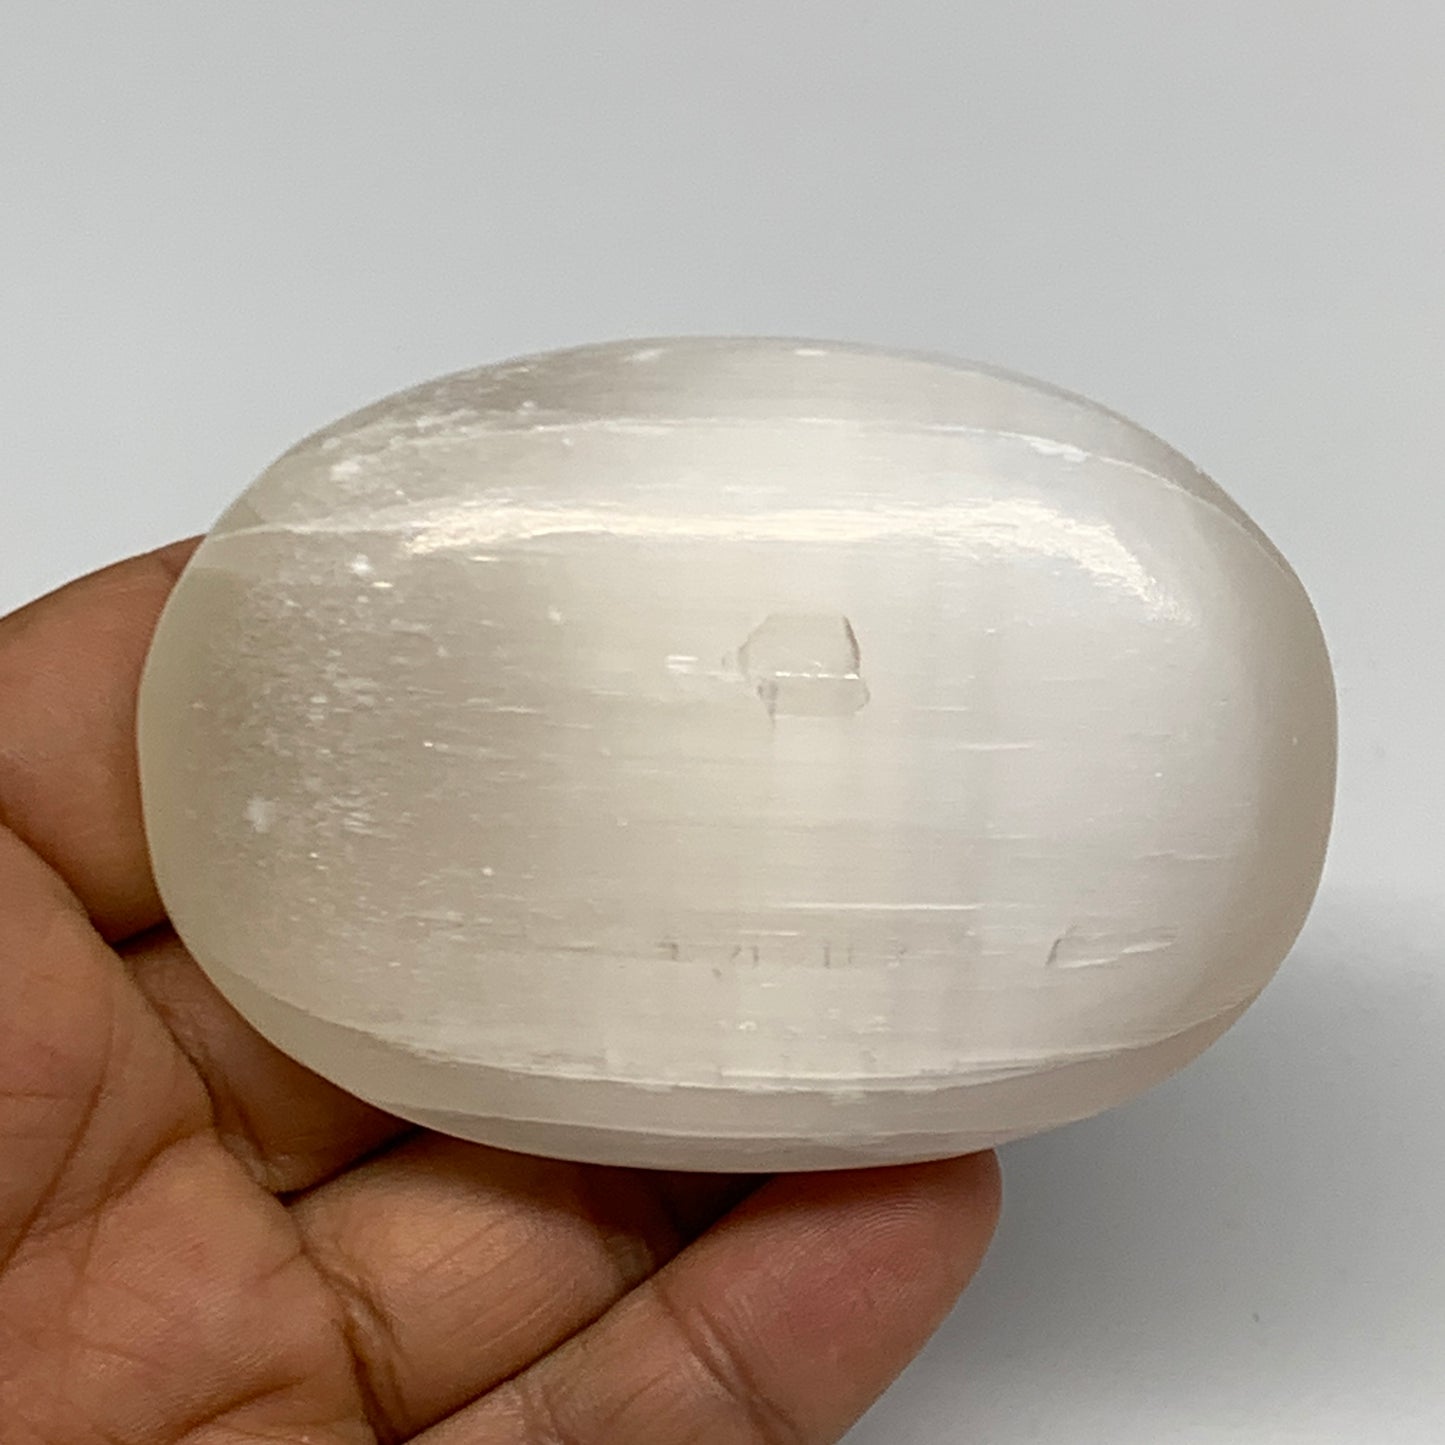 120g, 2.8"x2"x1", White Satin Spar (Selenite) Palmstone Crystal Gypsum, B22581